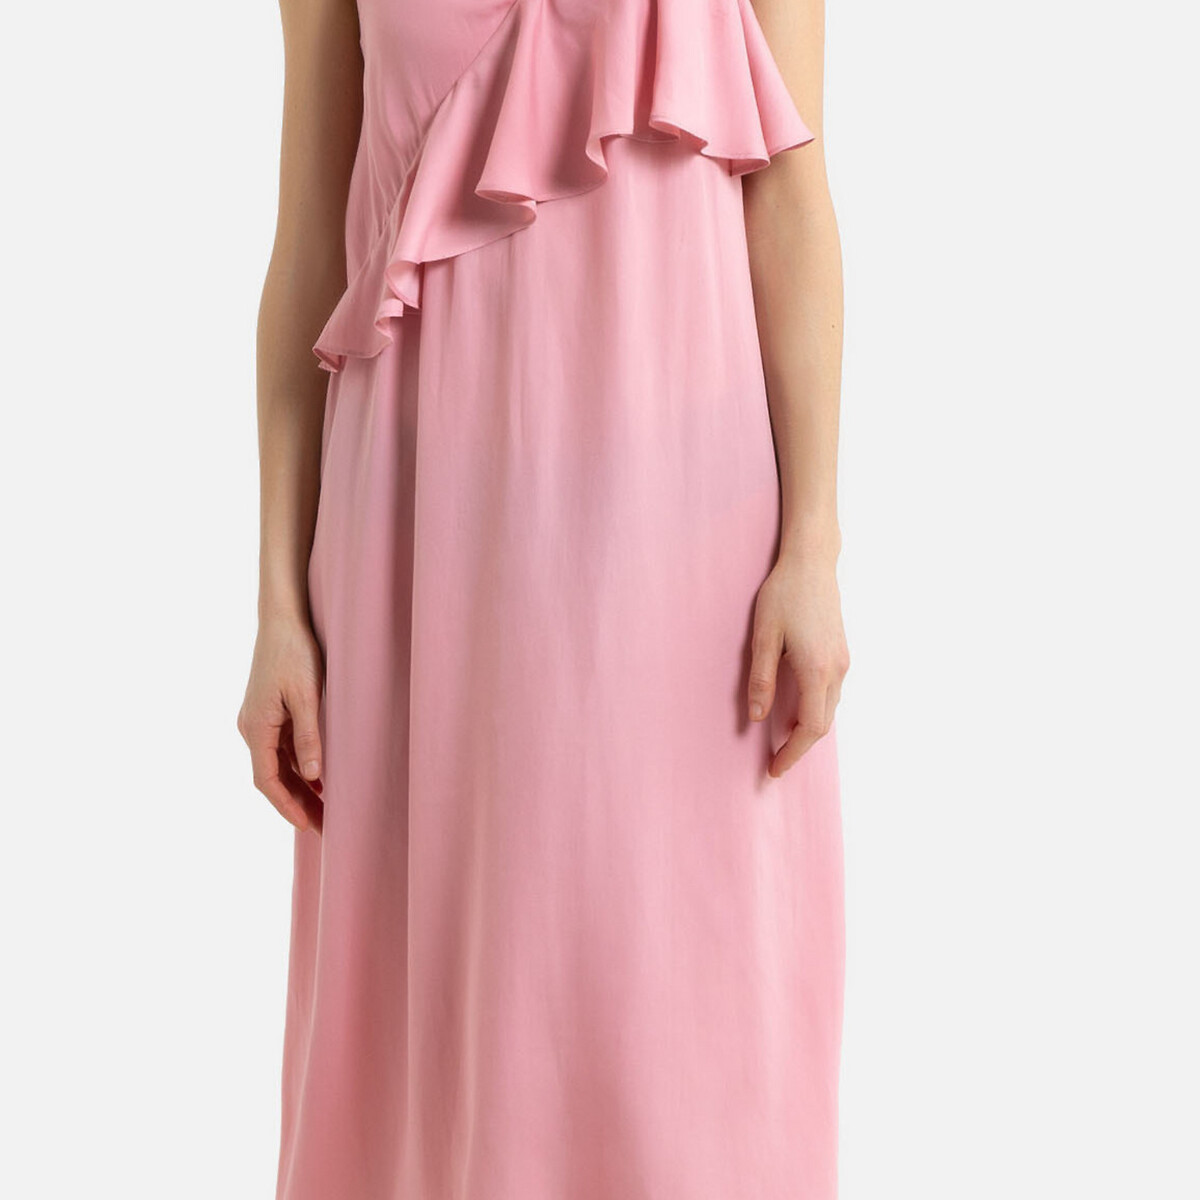 Платье La Redoute Длинное на тонких бретелях с воланом 42 (FR) - 48 (RUS) розовый, размер 42 (FR) - 48 (RUS) Длинное на тонких бретелях с воланом 42 (FR) - 48 (RUS) розовый - фото 4